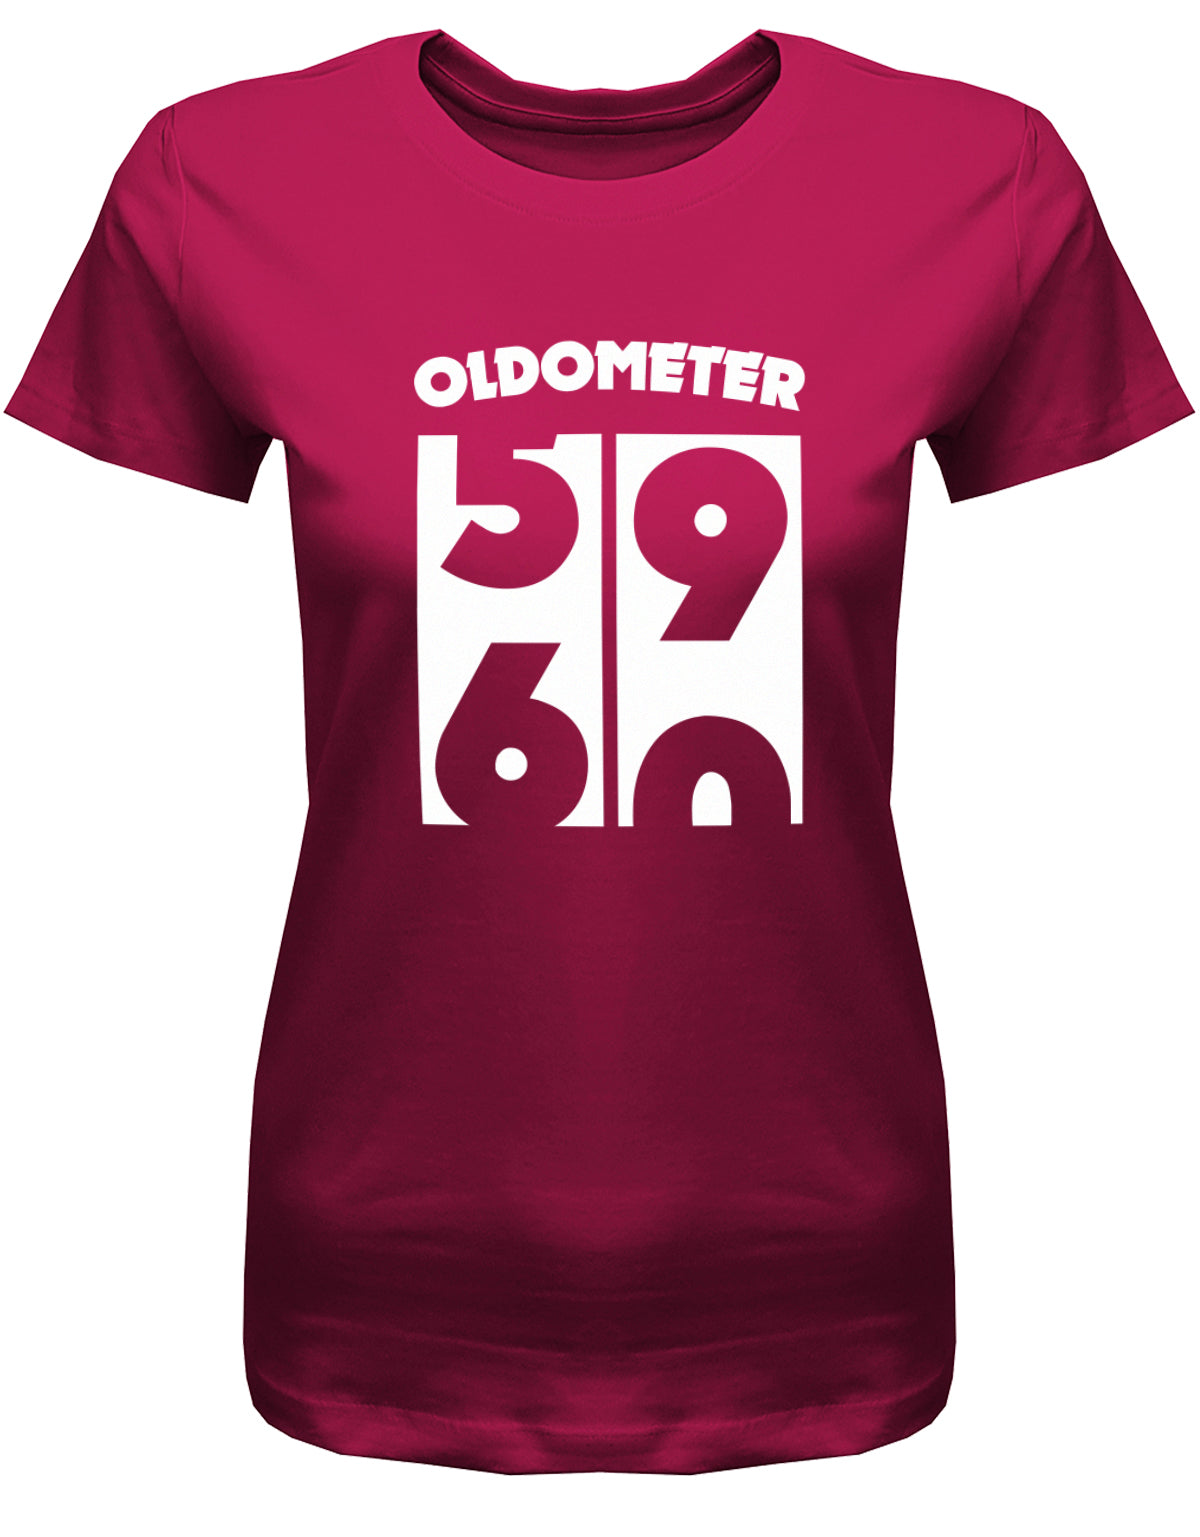 Lustiges T-Shirt zum 60 Geburtstag für die Frau Bedruckt mit Oldometer Wechsel von 59 zu 60 Jahren. Sorbet